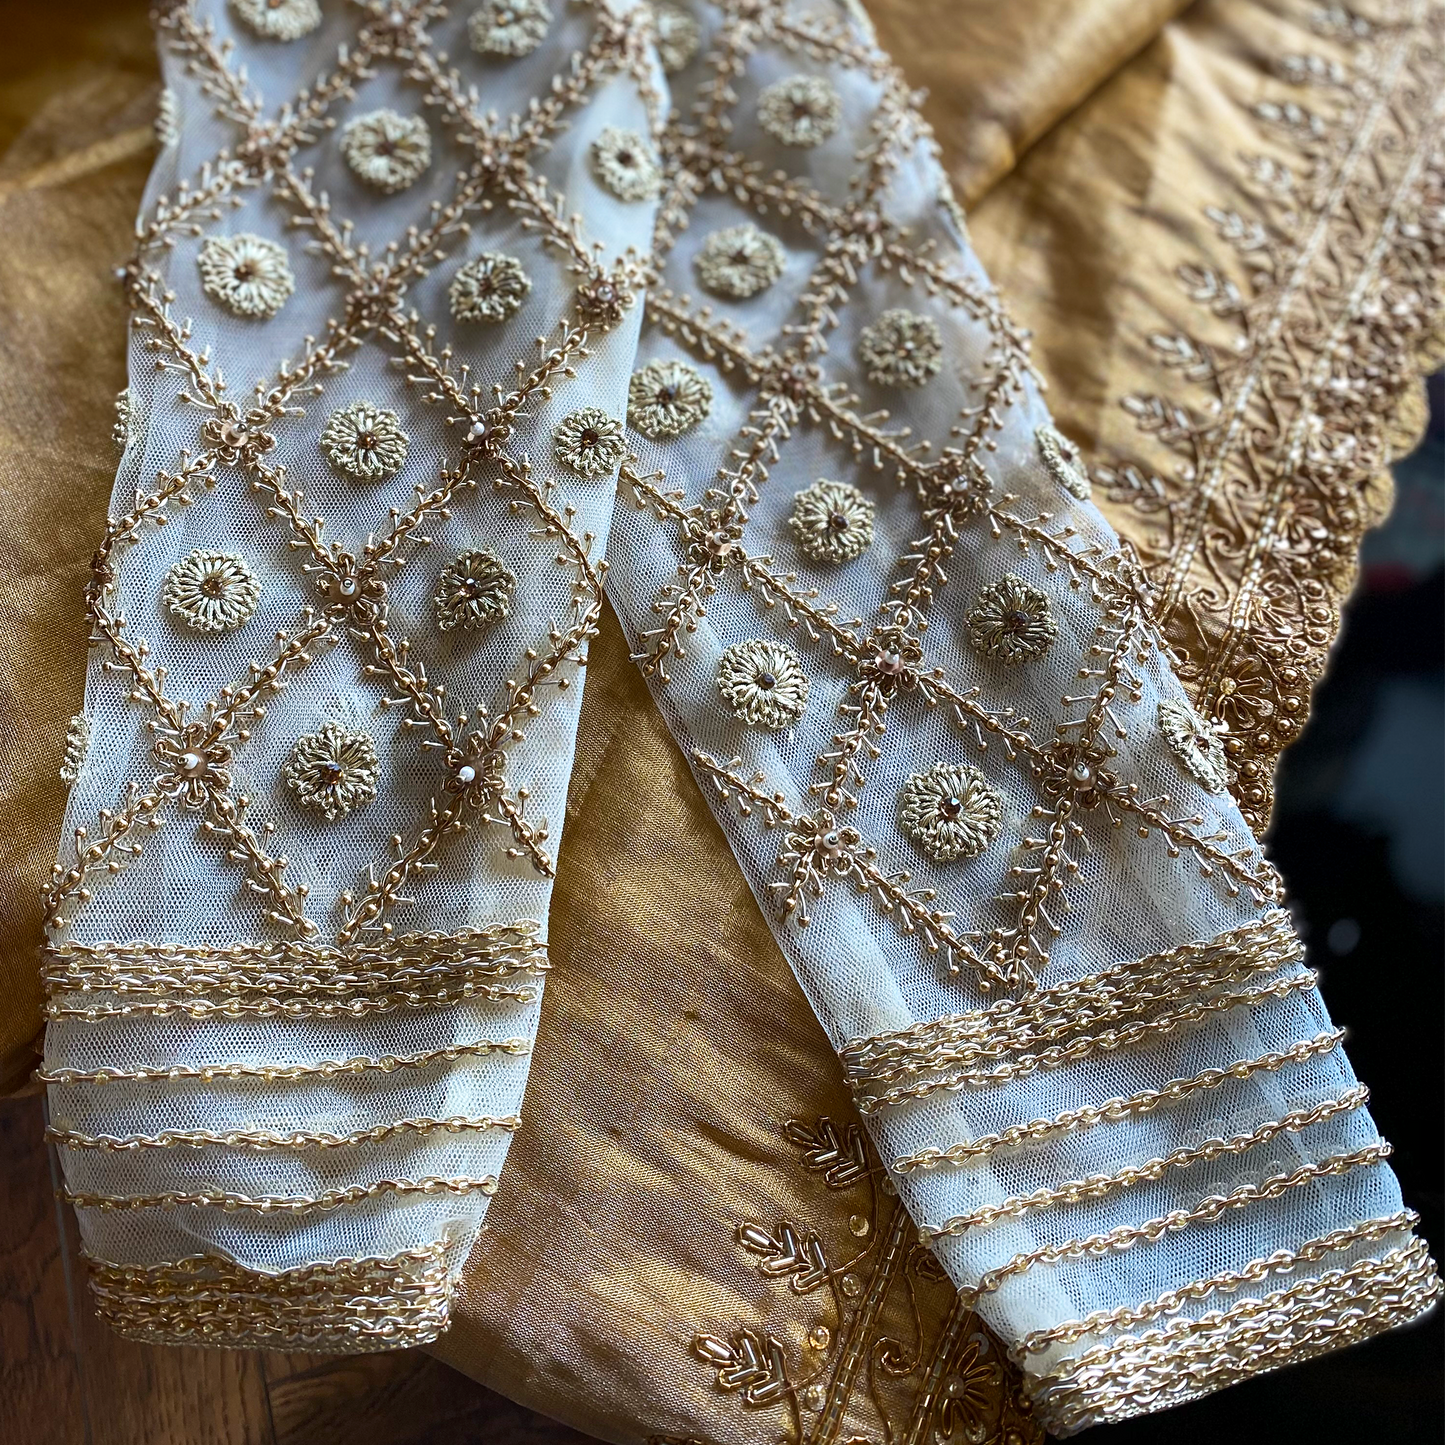 Zardosi & Stone-Embellished Blouse (excluding fabric cost)